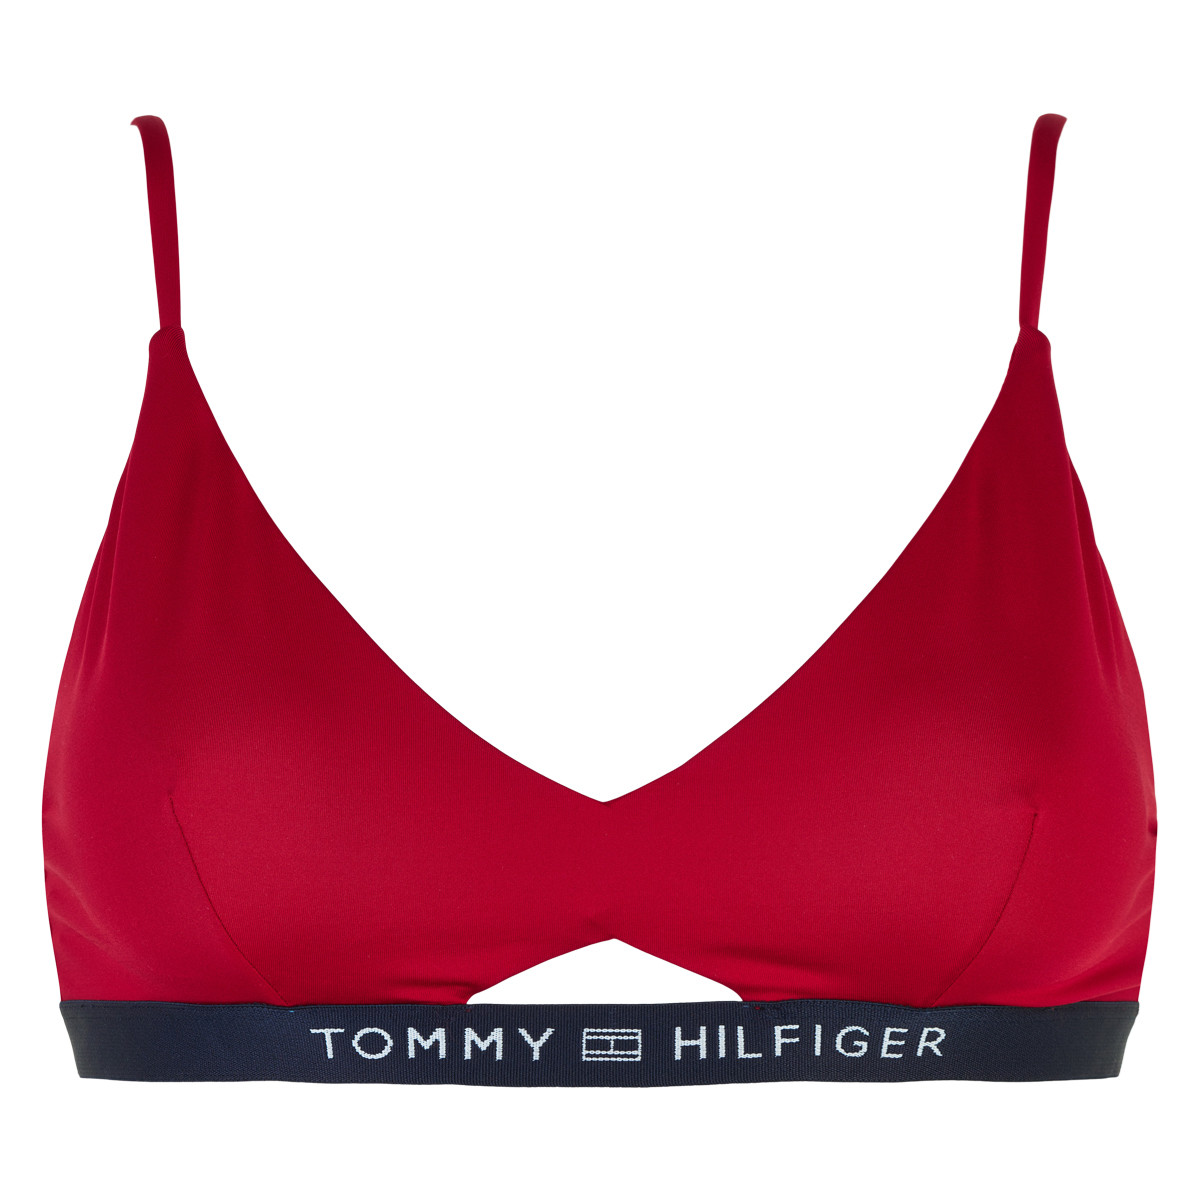 Tommy Hilfiger Lingeri Bikini lg, Rød, Størrelse: XS, 360.00 DKK - Fashion